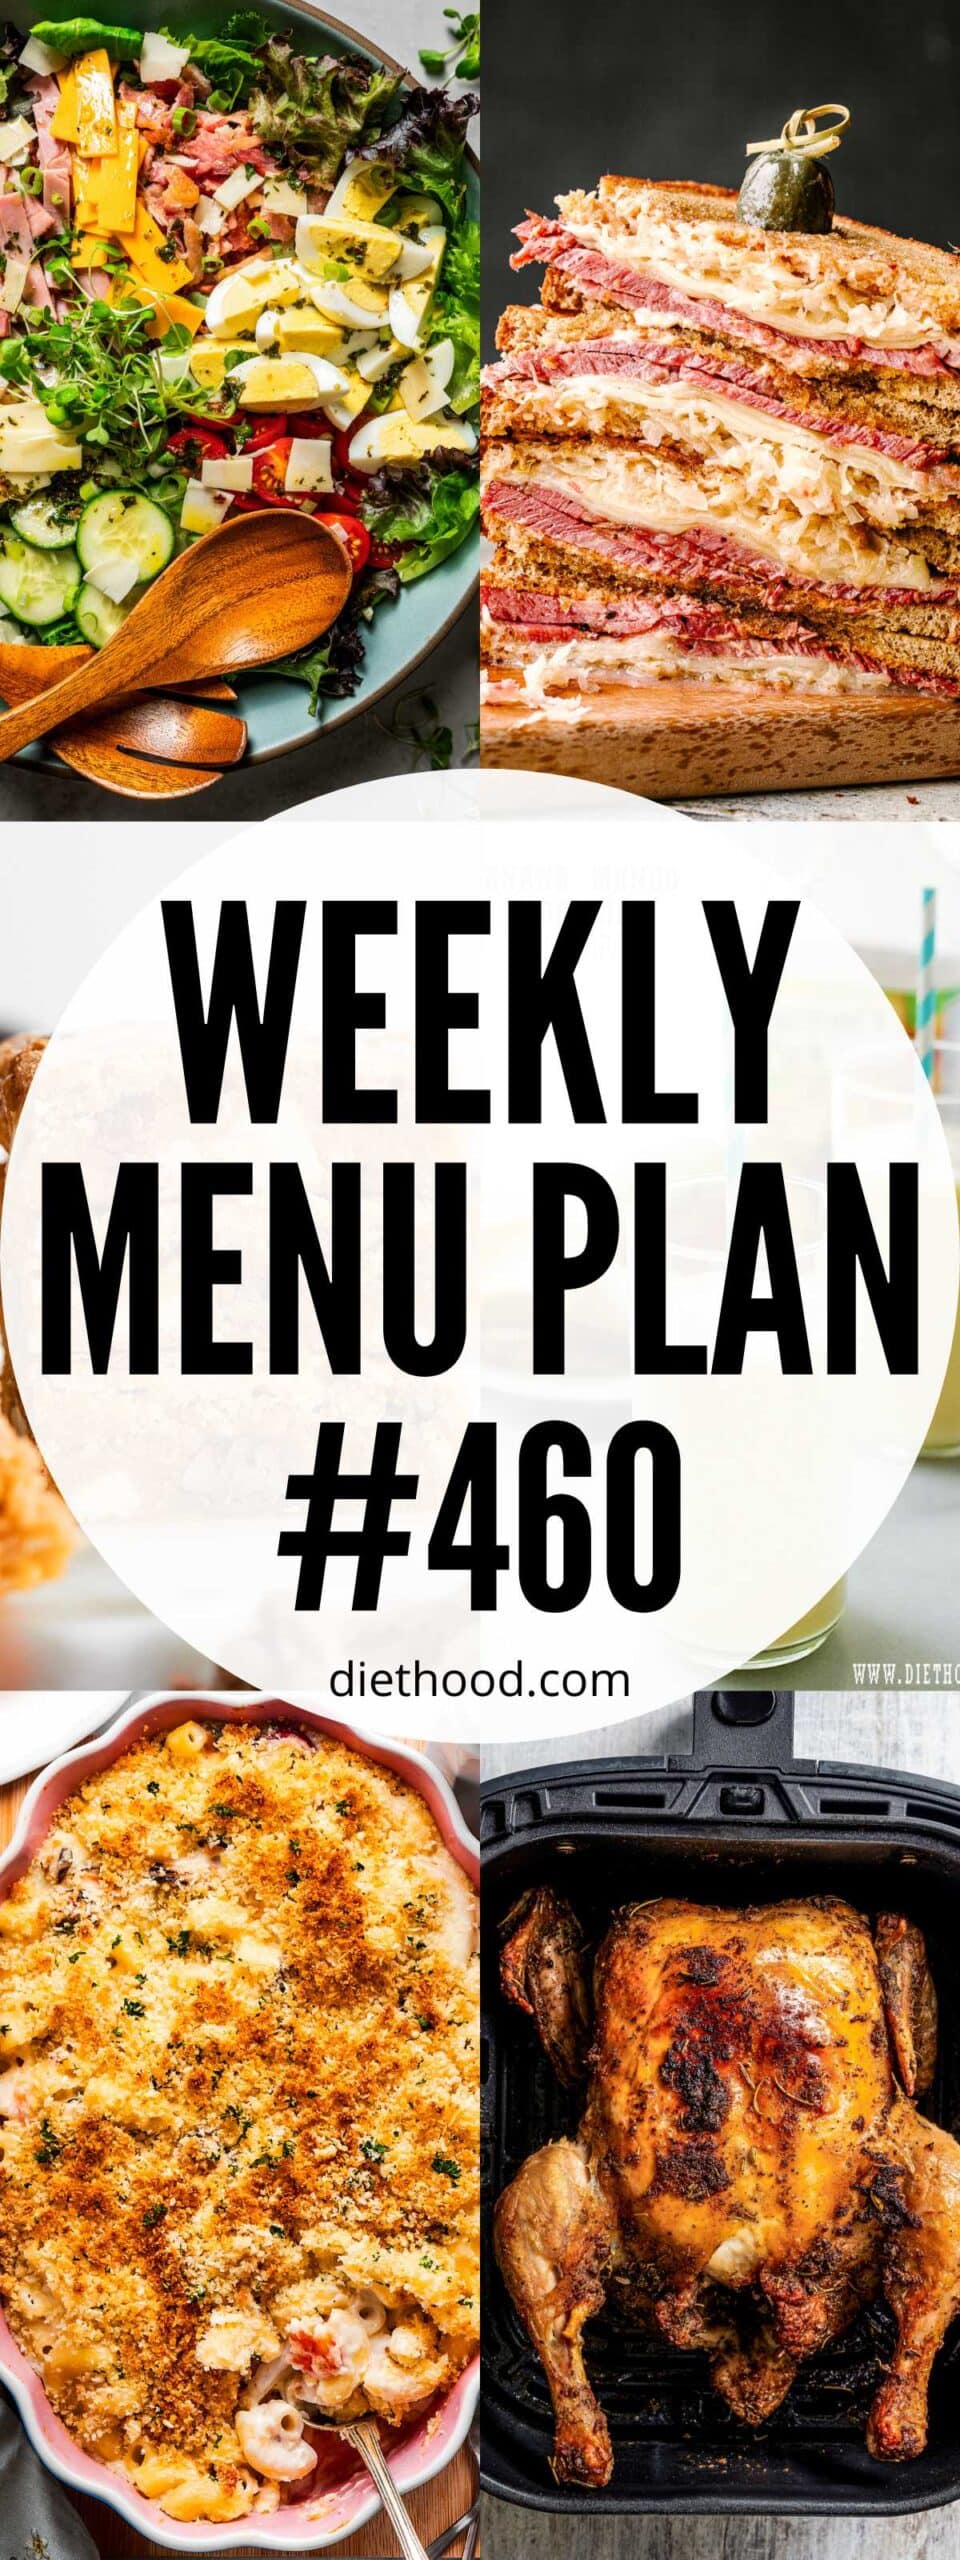 Weekly Menu Plan 460 six image collage Pinterest image.